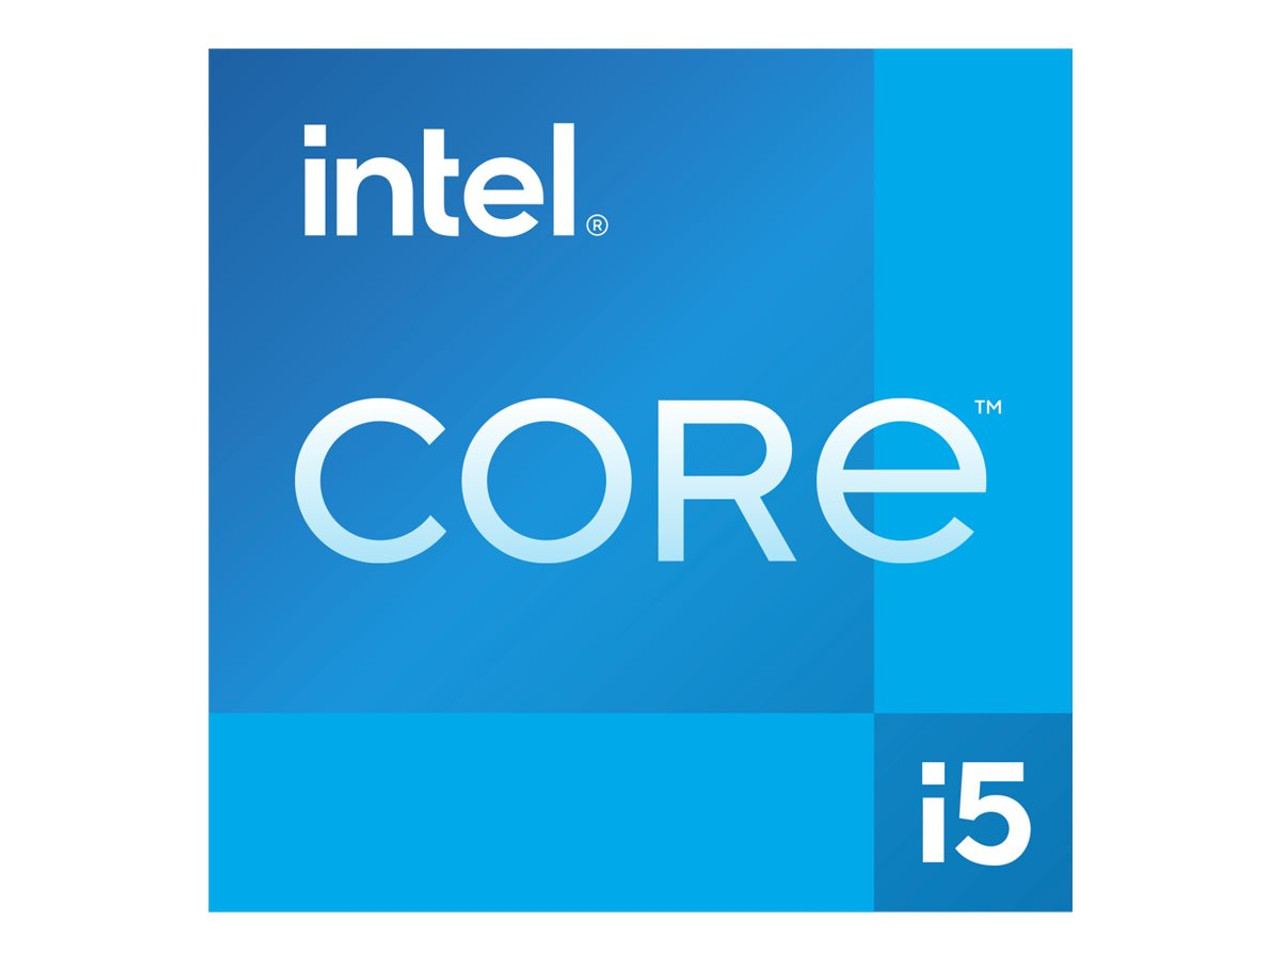  Intel Core i5-13500 Desktop Processor 14 cores (6 P